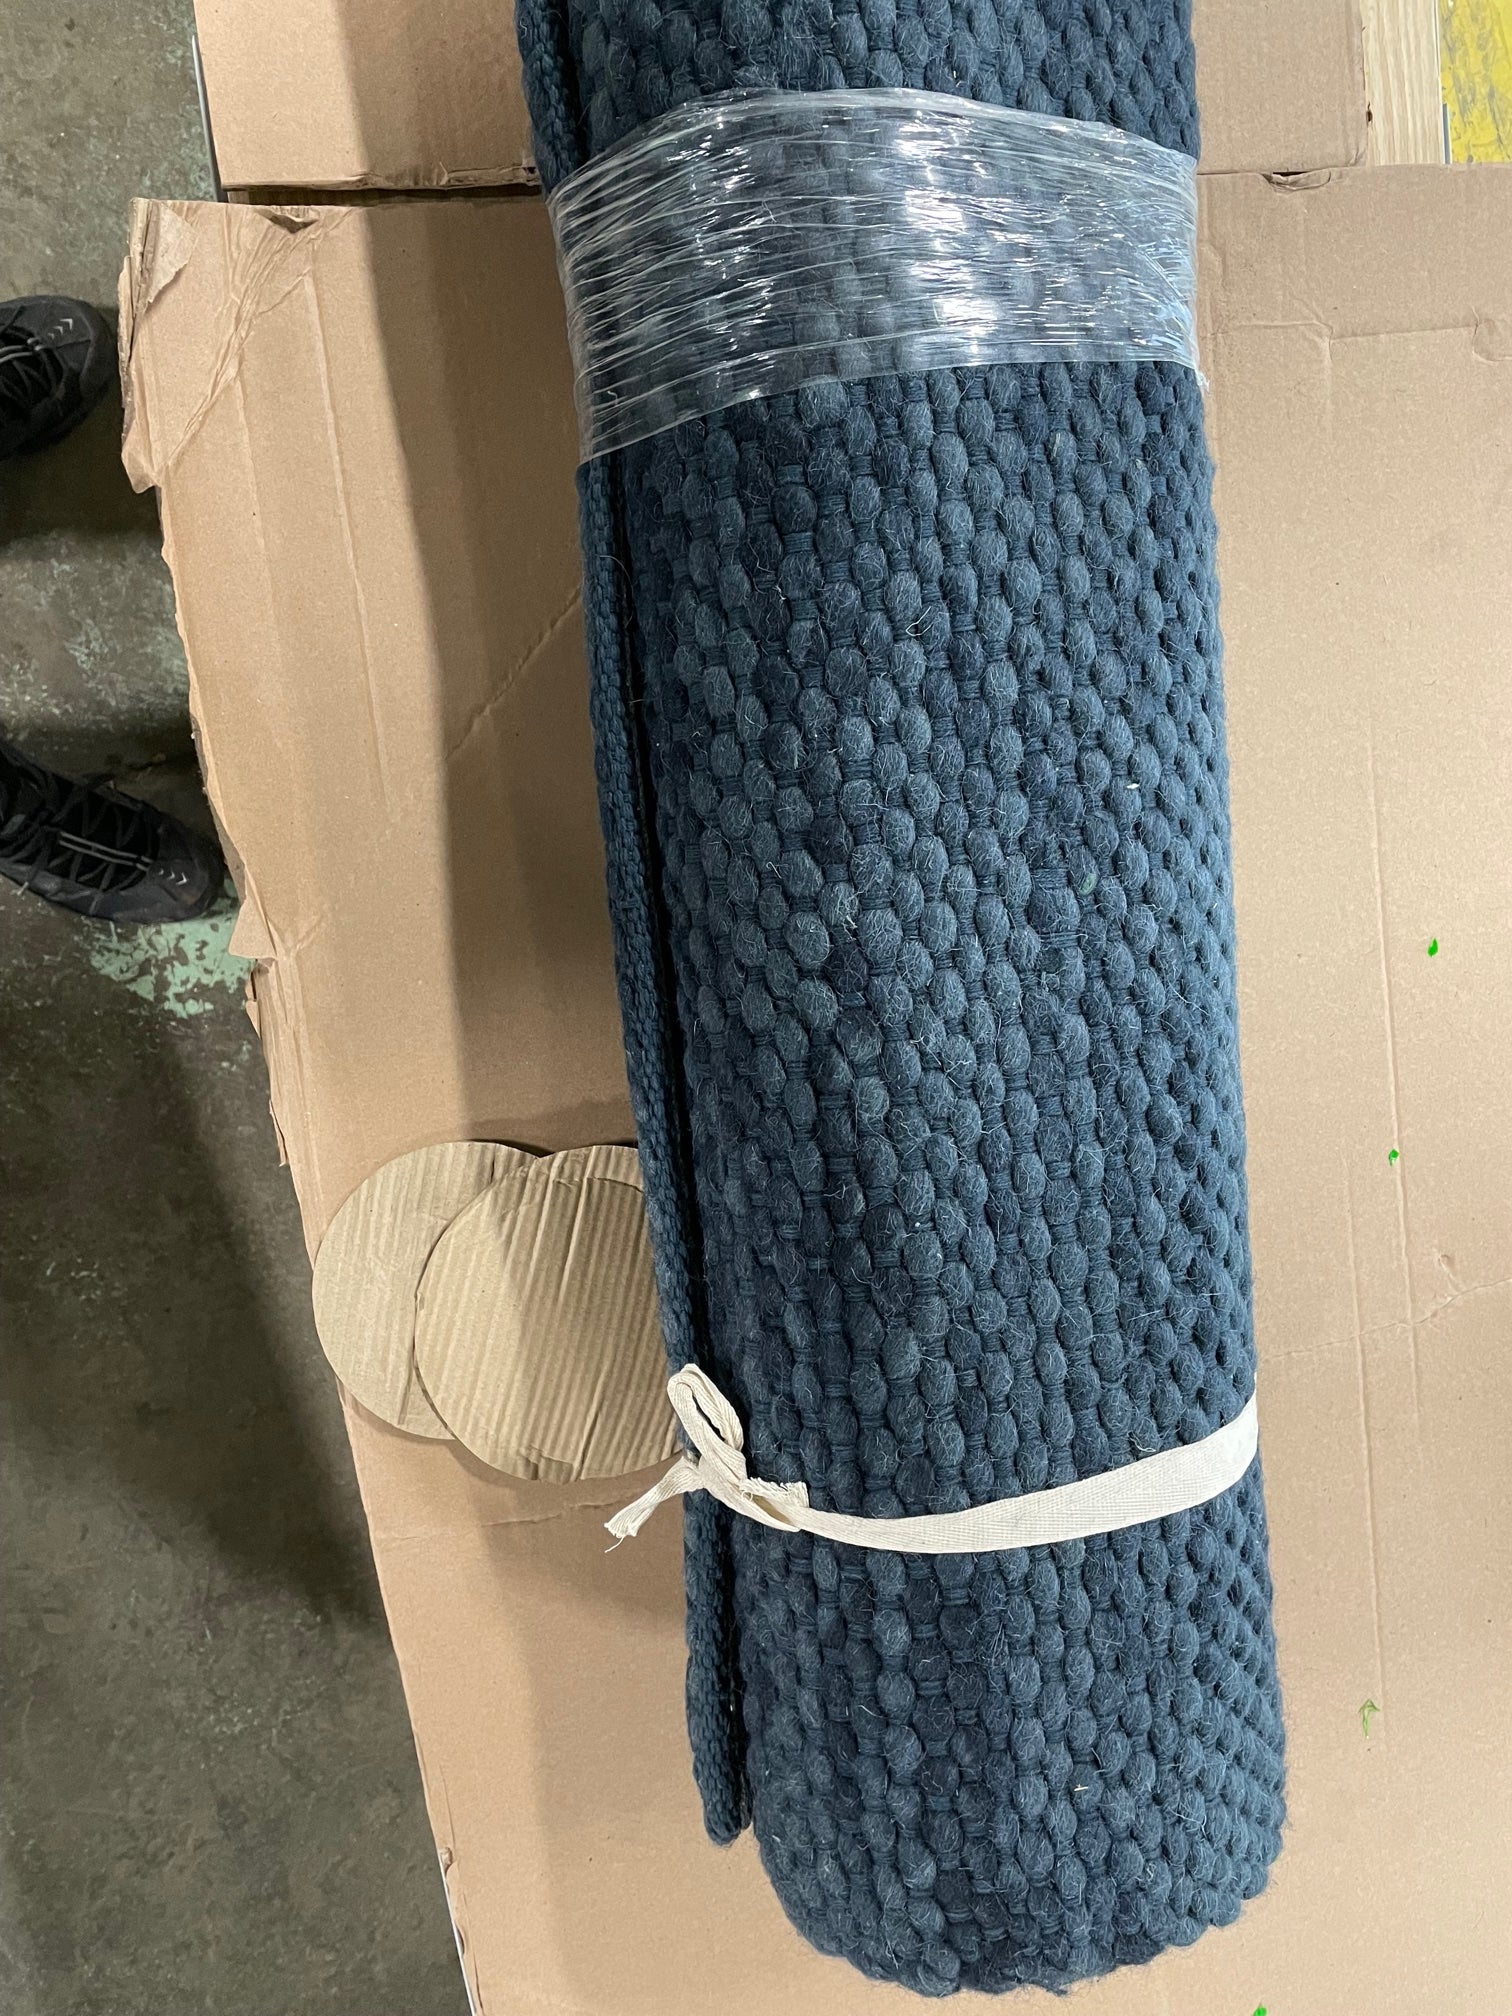 5' x 7' Woven Area Rug (indigo blue)